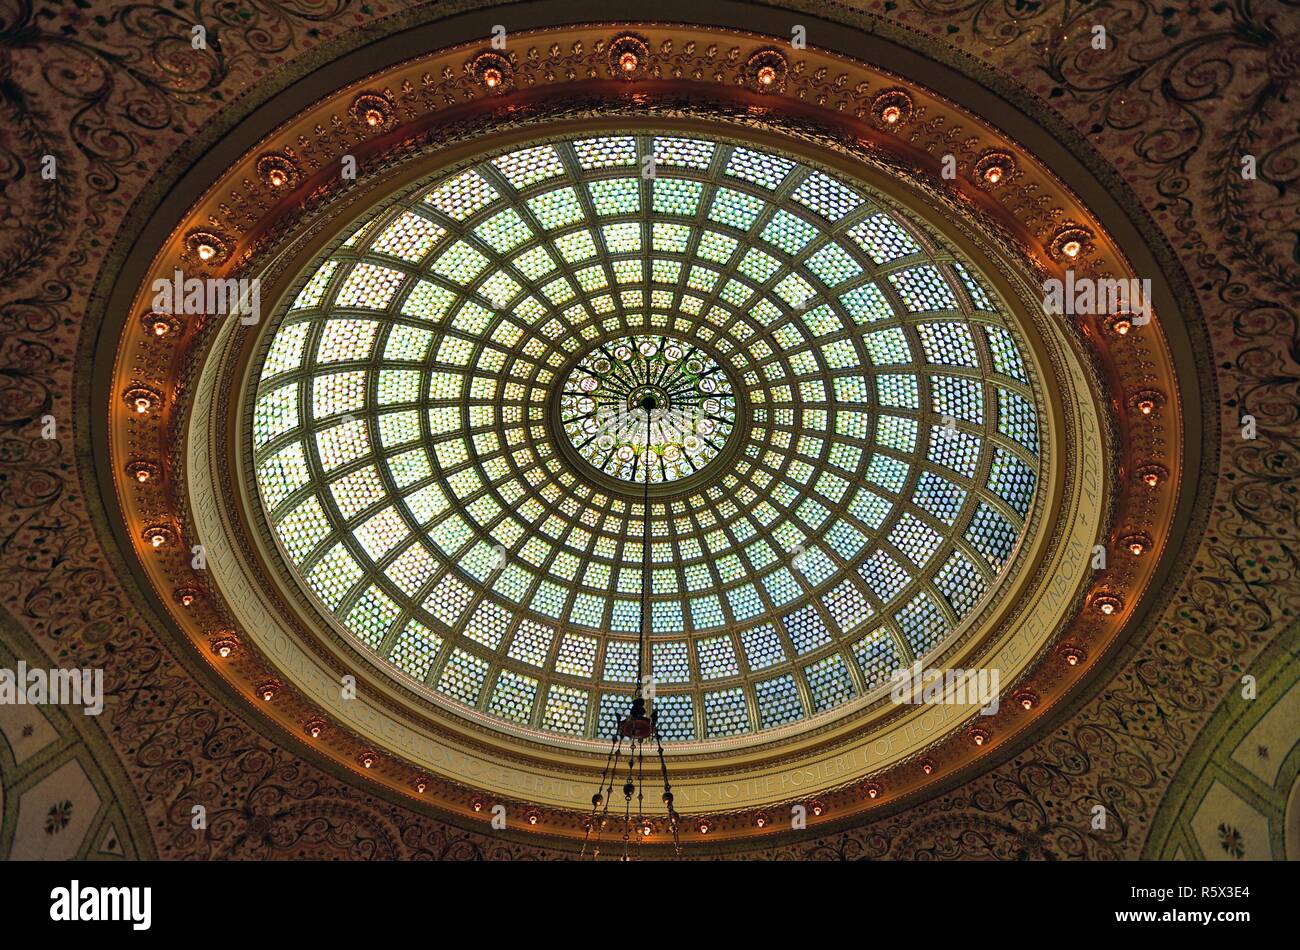 Chicago, Illinois, USA. Le 38 pieds de Tiffany glass dome conçu par l'artiste J. A. Holtzer. dans le Preston Bradley Hall dans le centre culturel de Chicago. Banque D'Images